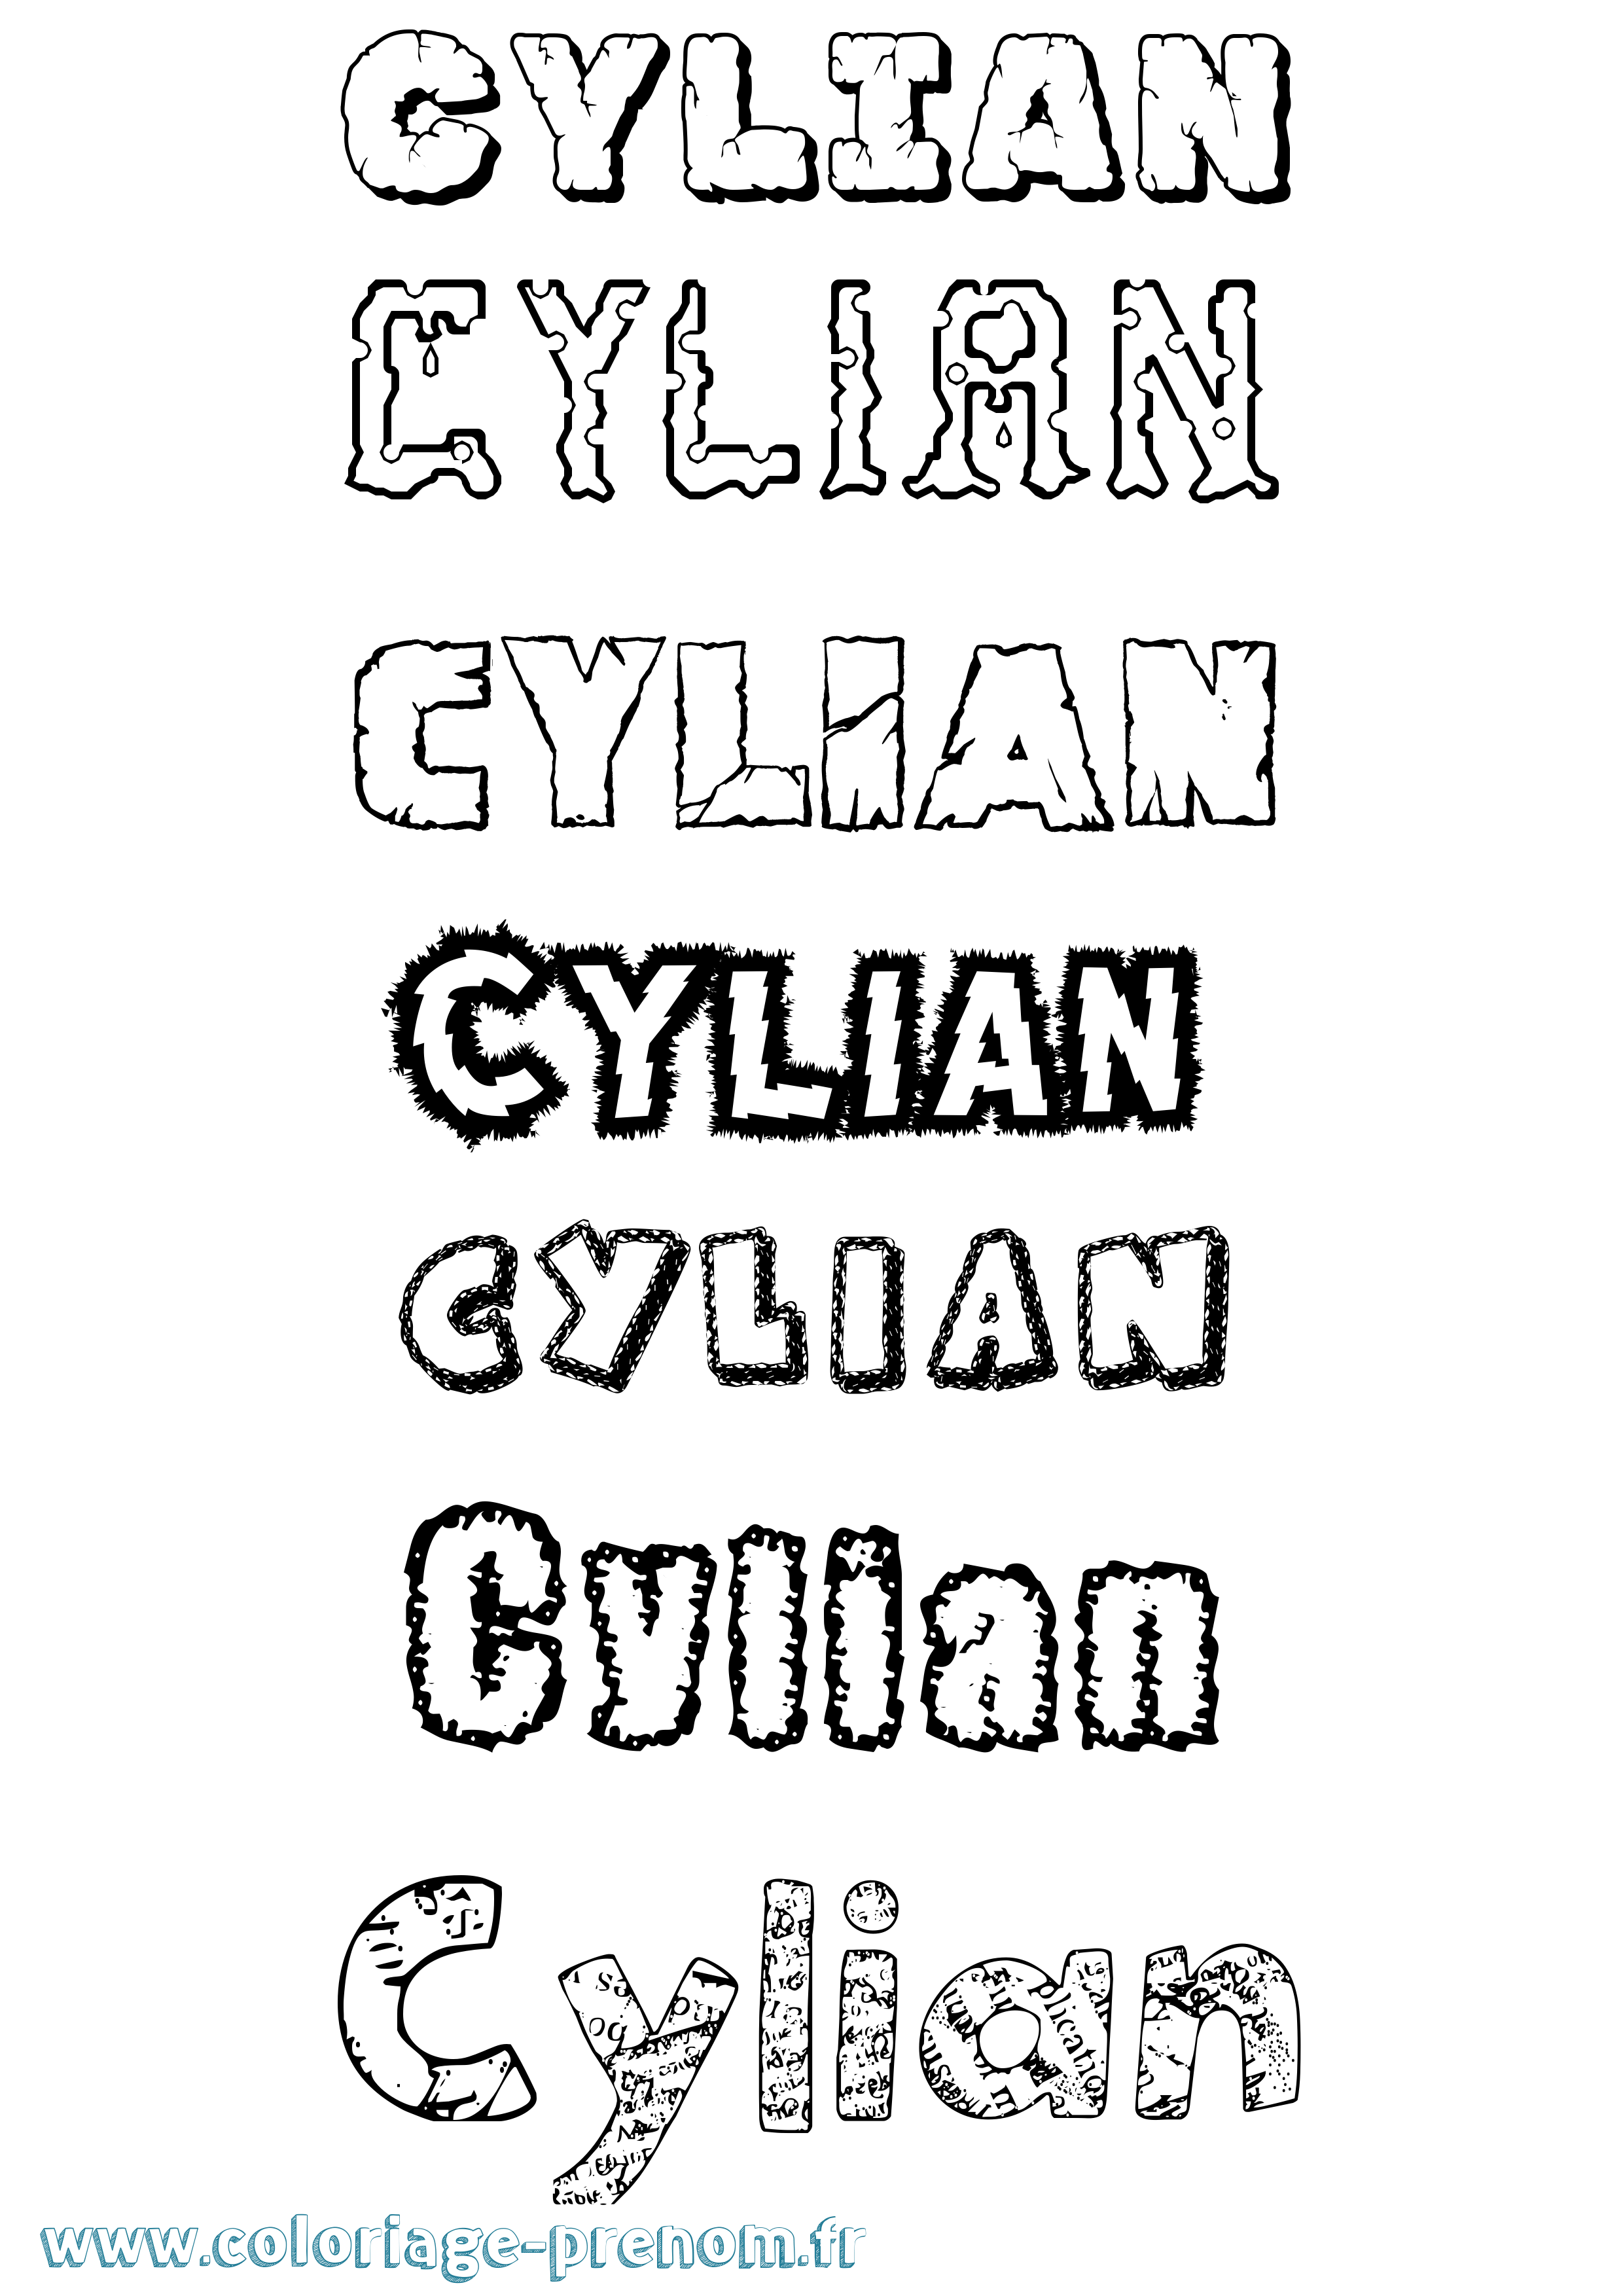 Coloriage prénom Cylian Destructuré